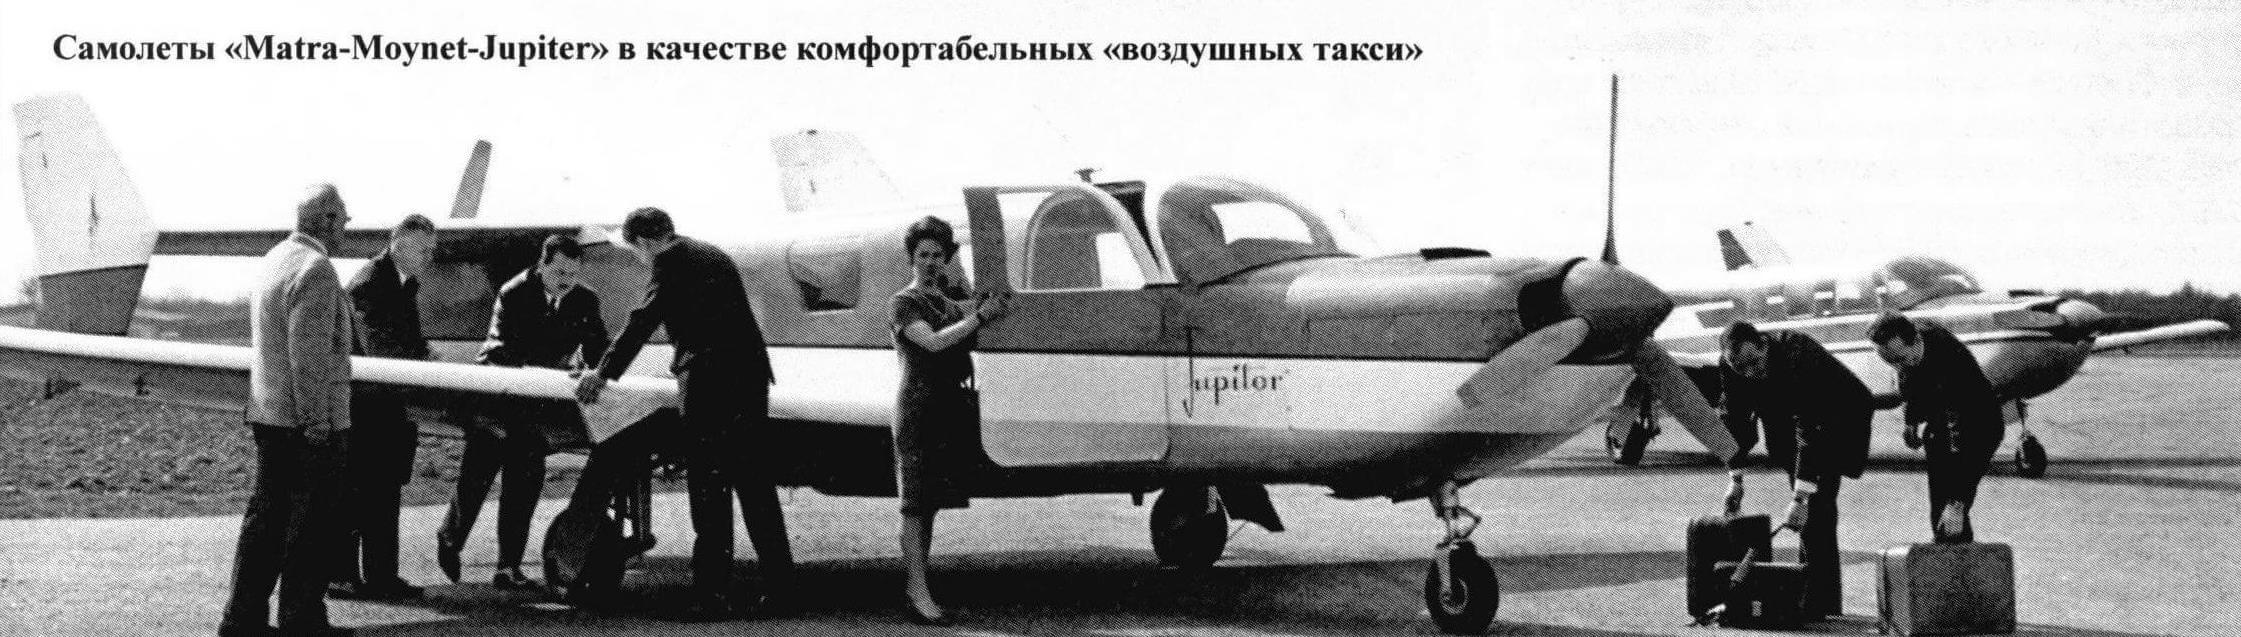 Самолеты «Matra-Moynet-Jupiter» в качестве комфортабельных «воздушных такси»